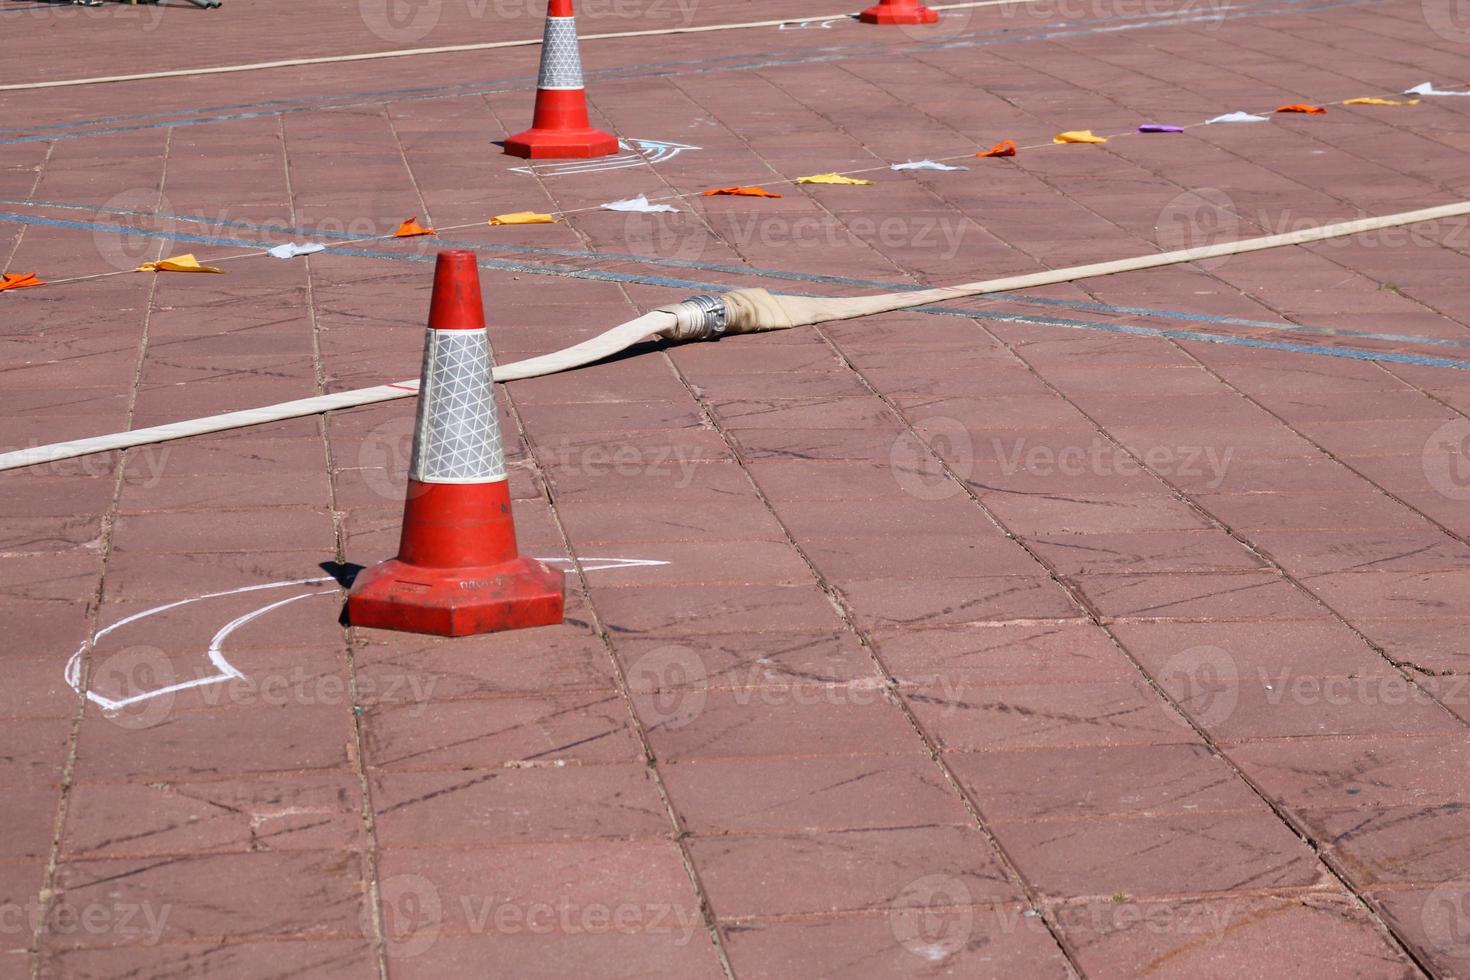 un cono naranja triangular de emergencia que denota peligro y una manguera contra incendios yacen en el suelo de piedra, la carretera. foto